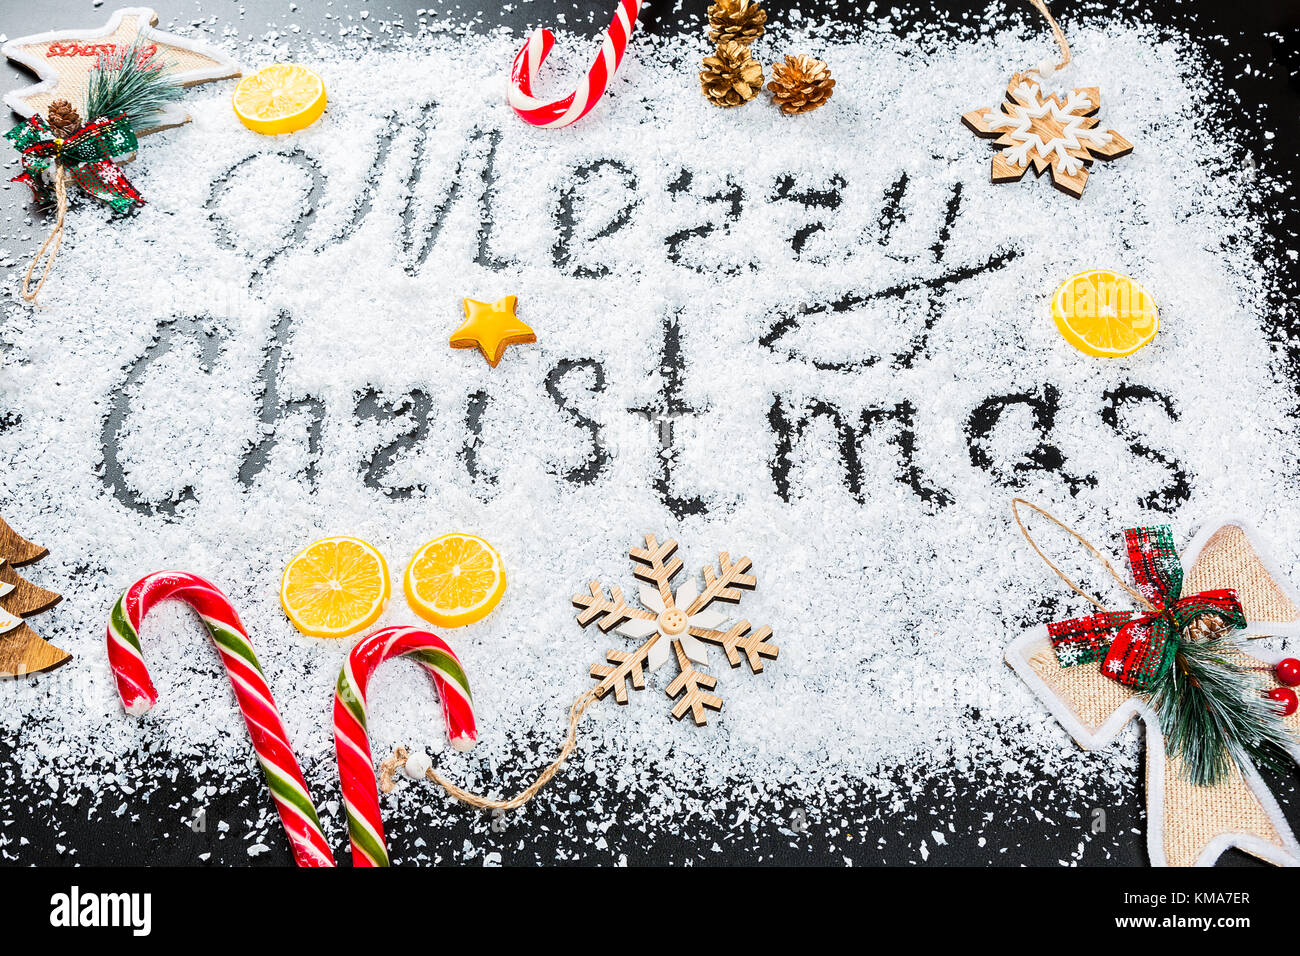 Weihnachten Hintergrund mit der Aufschrift frohe Weihnachten auf weißem Schnee mit Holzspielzeug, Zitrone, Süßigkeiten, Schneeflocken und neues Jahr Dekor. Winterurlaub Stockfoto